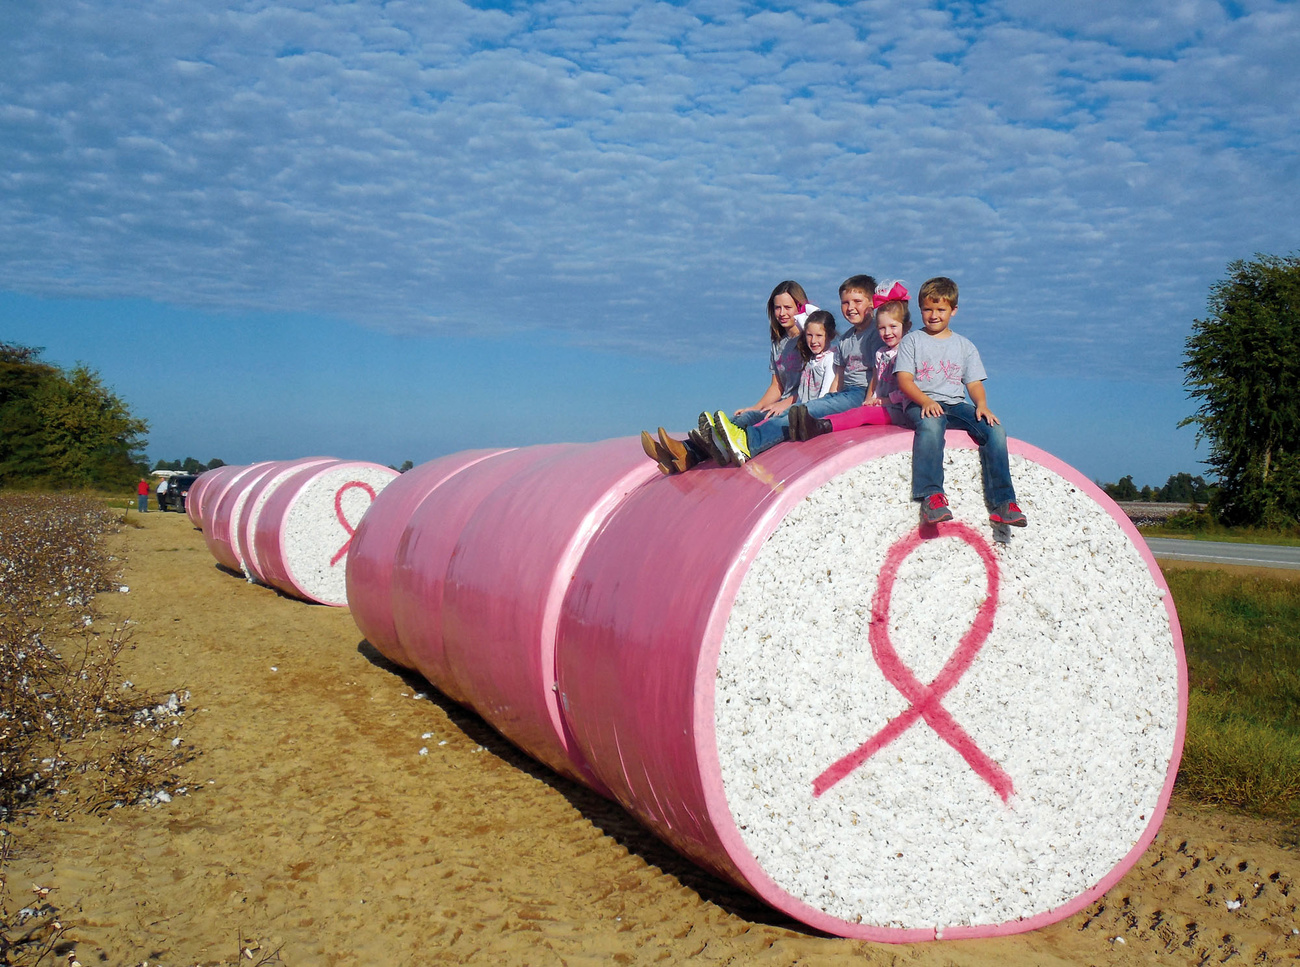 アメリカでは、乳がんの早期発見のためのキャンペーンが盛んに行われている。2013年、ミズーリ州の綿畑にて撮影